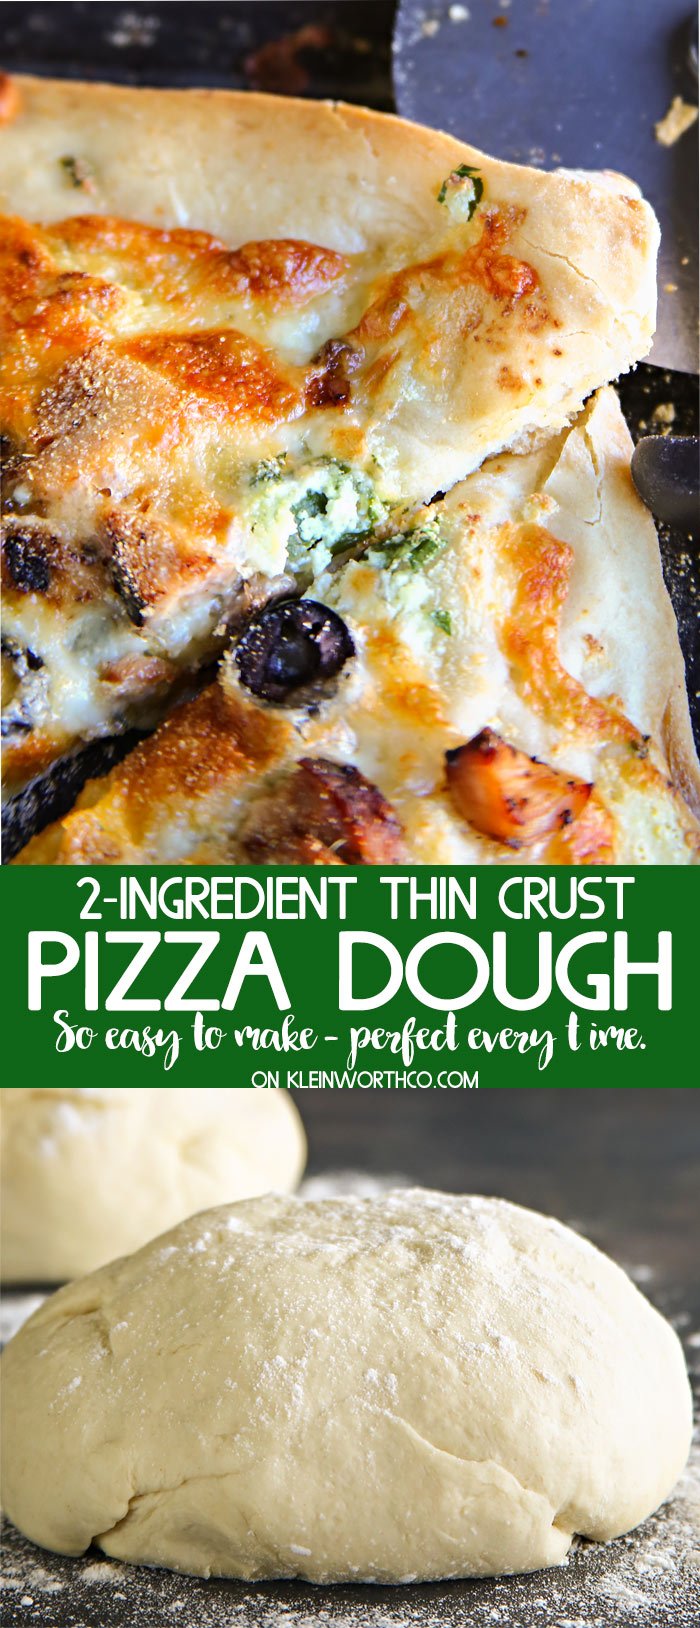 Easy 2-Ingredient Pizza Dough recipe